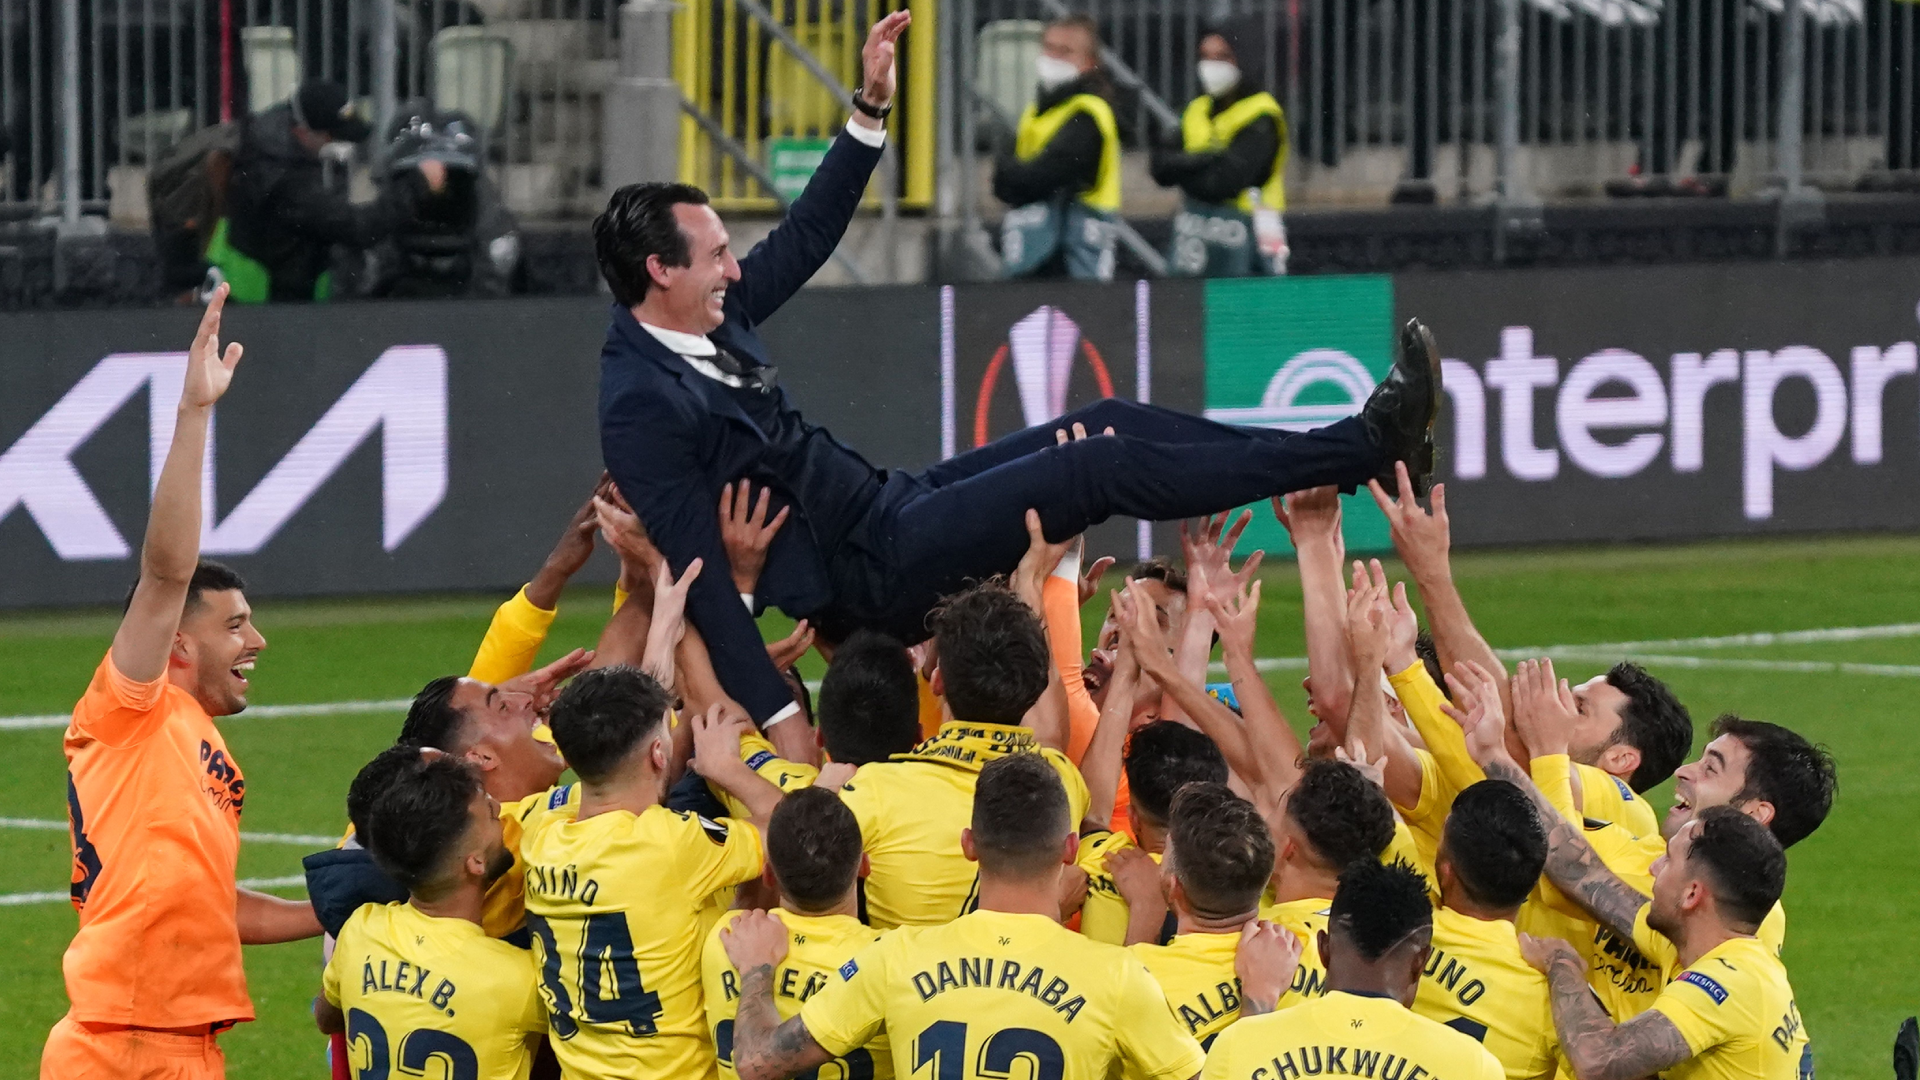 Nhờ chiên thắng trước MU ở Europa League năm ngoái mà Emery giúp Villarreal xuất hiện tại vòng bảng Champions League mùa này